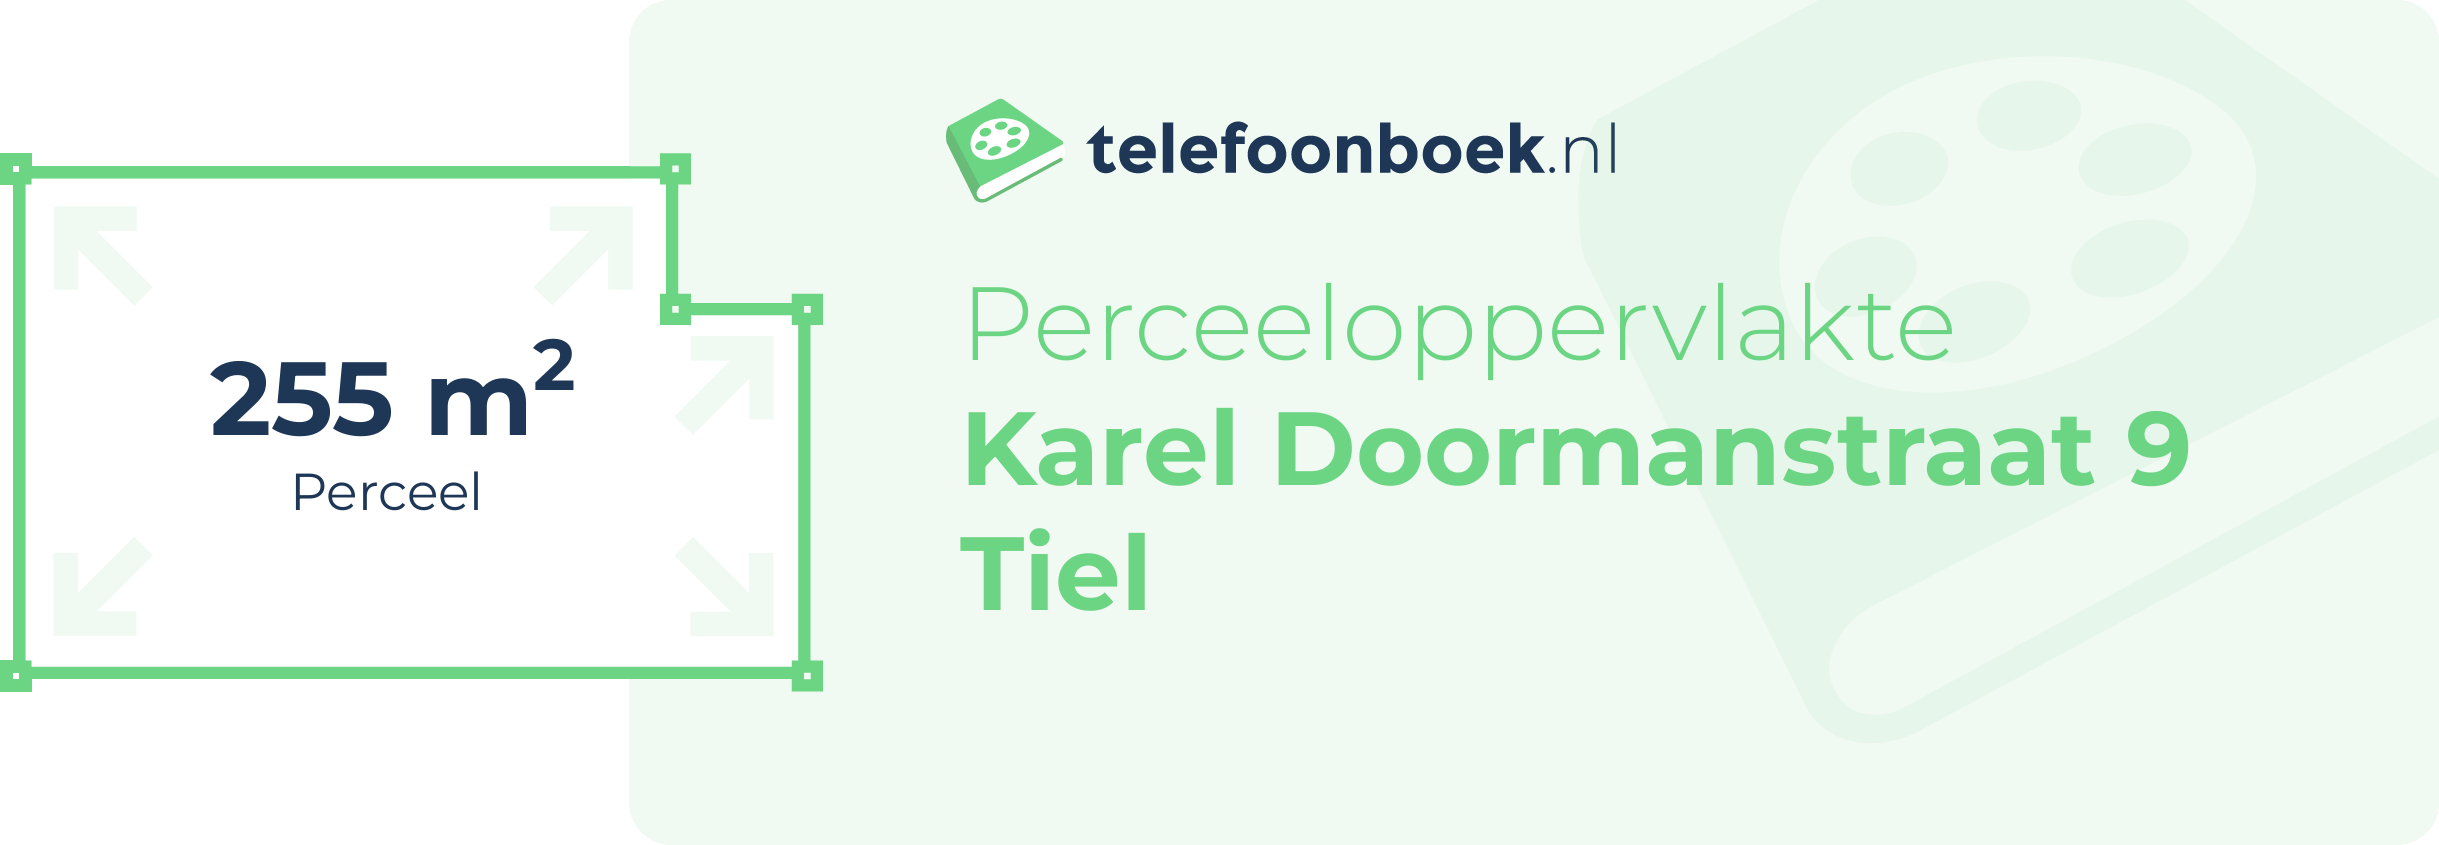 Perceeloppervlakte Karel Doormanstraat 9 Tiel